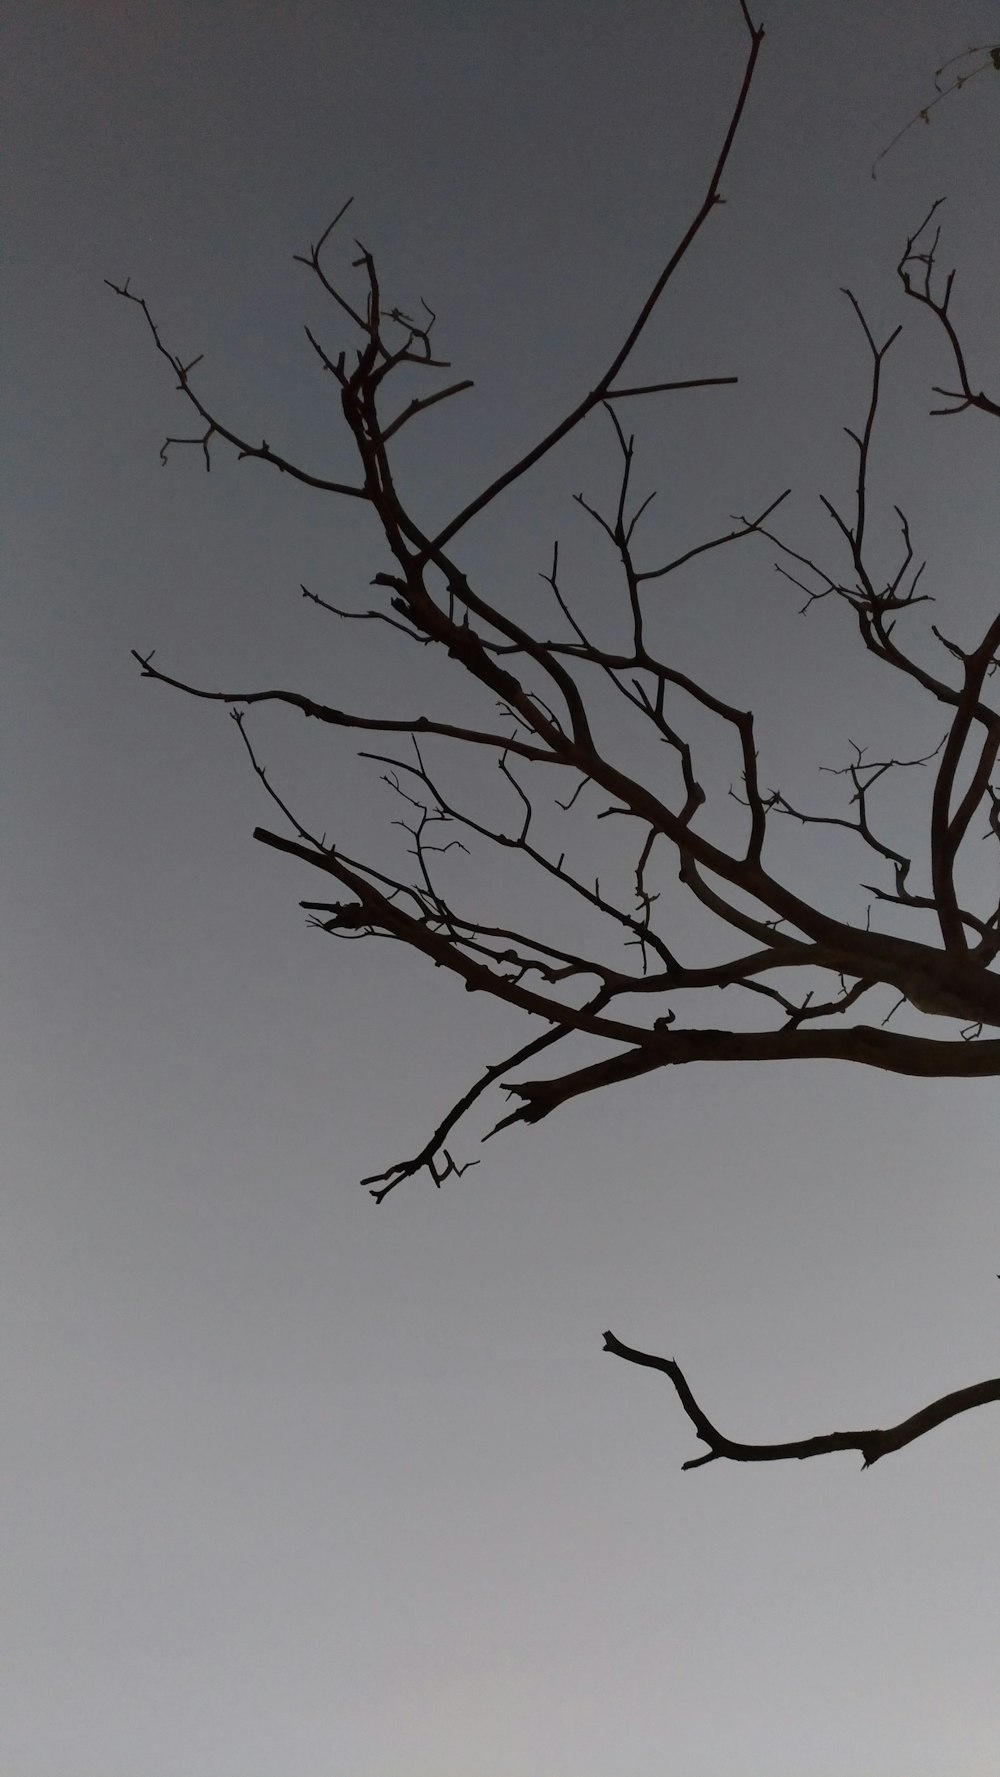 galho de árvore sob o céu cinzento